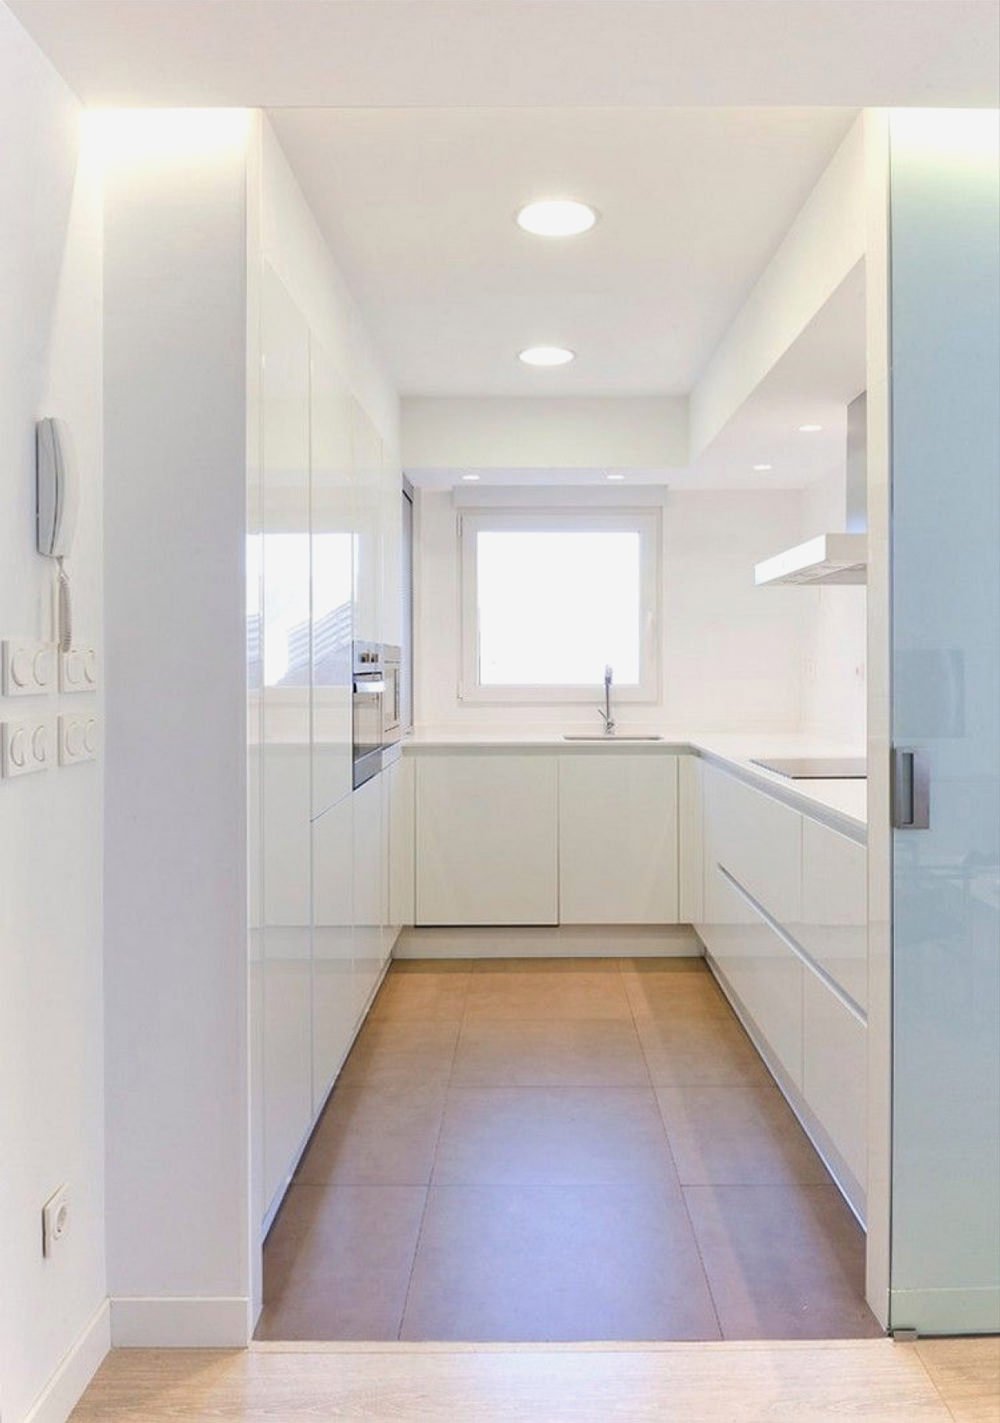 Piccola cucina bianca a U, con le ante laccate lucide, perfette per aumentare la luce e lo spazio visivo, così come la porta scorrevole in vetro. Pavimenti in gres. Idee cucina moderne bianche